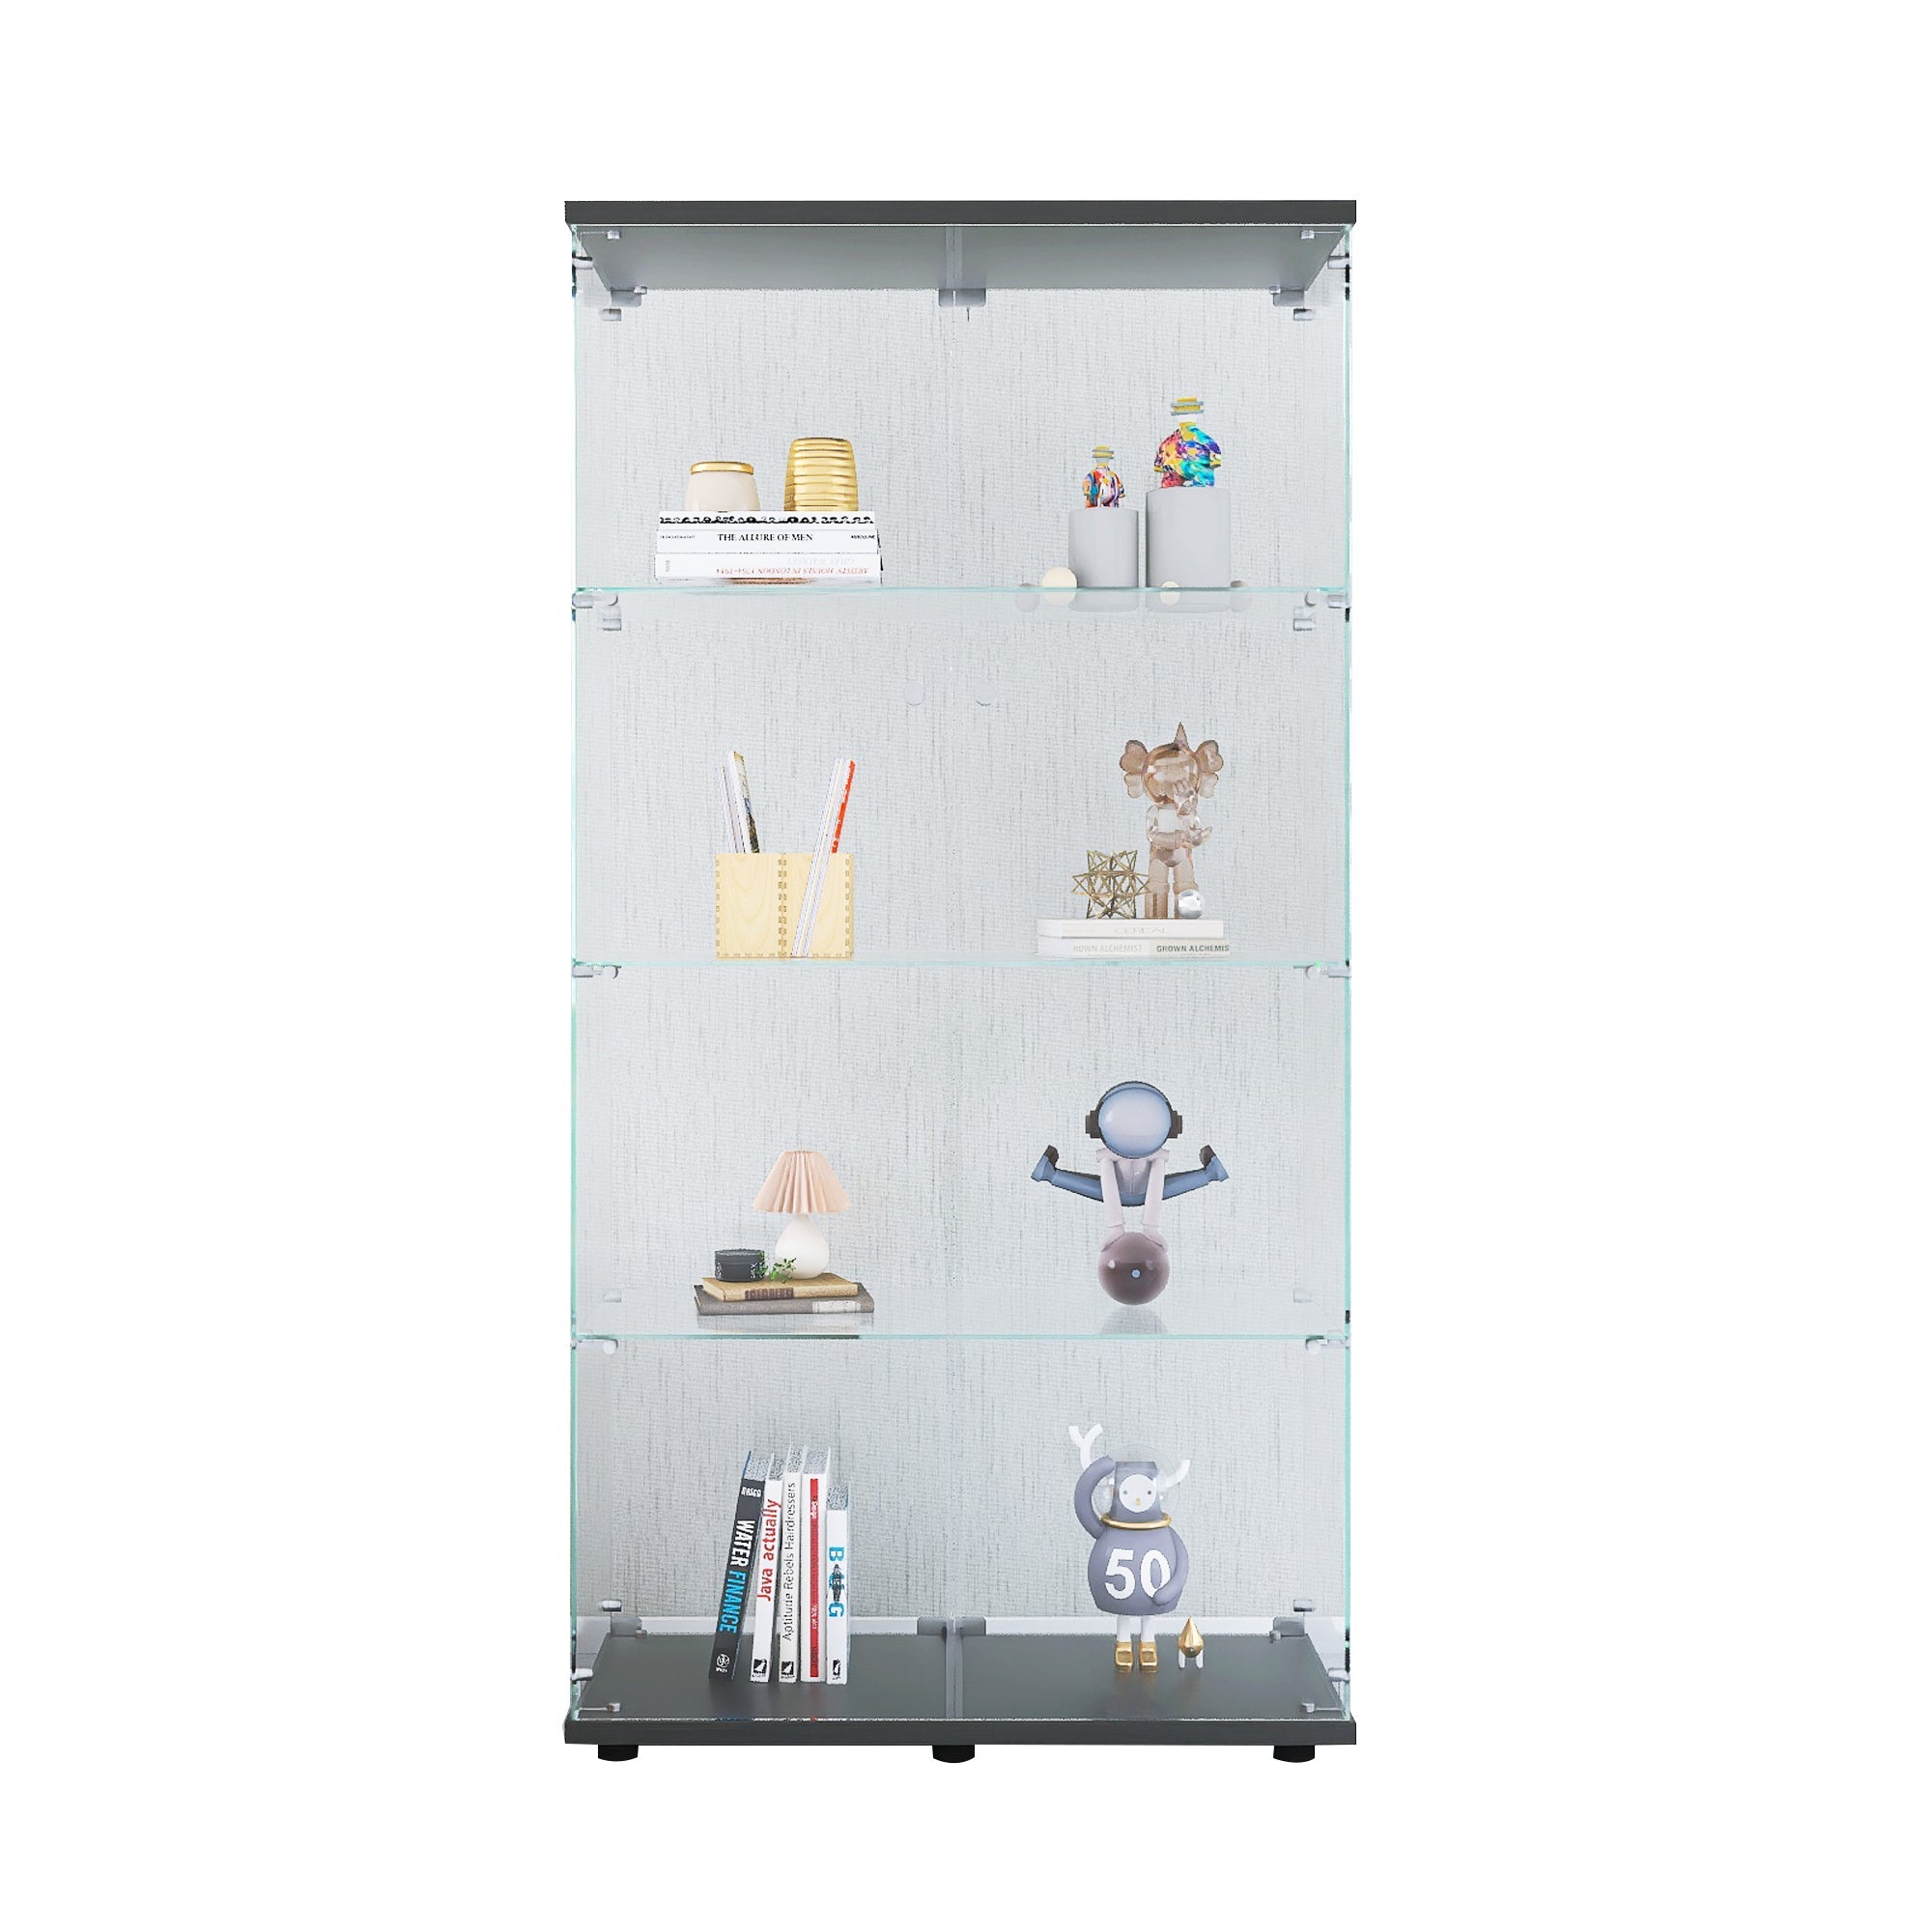 Black Two-Door Glass Display Cabinet: 4-Shelf Floor Standing Curio Bookshelf for Living Room, Bedroom, Office